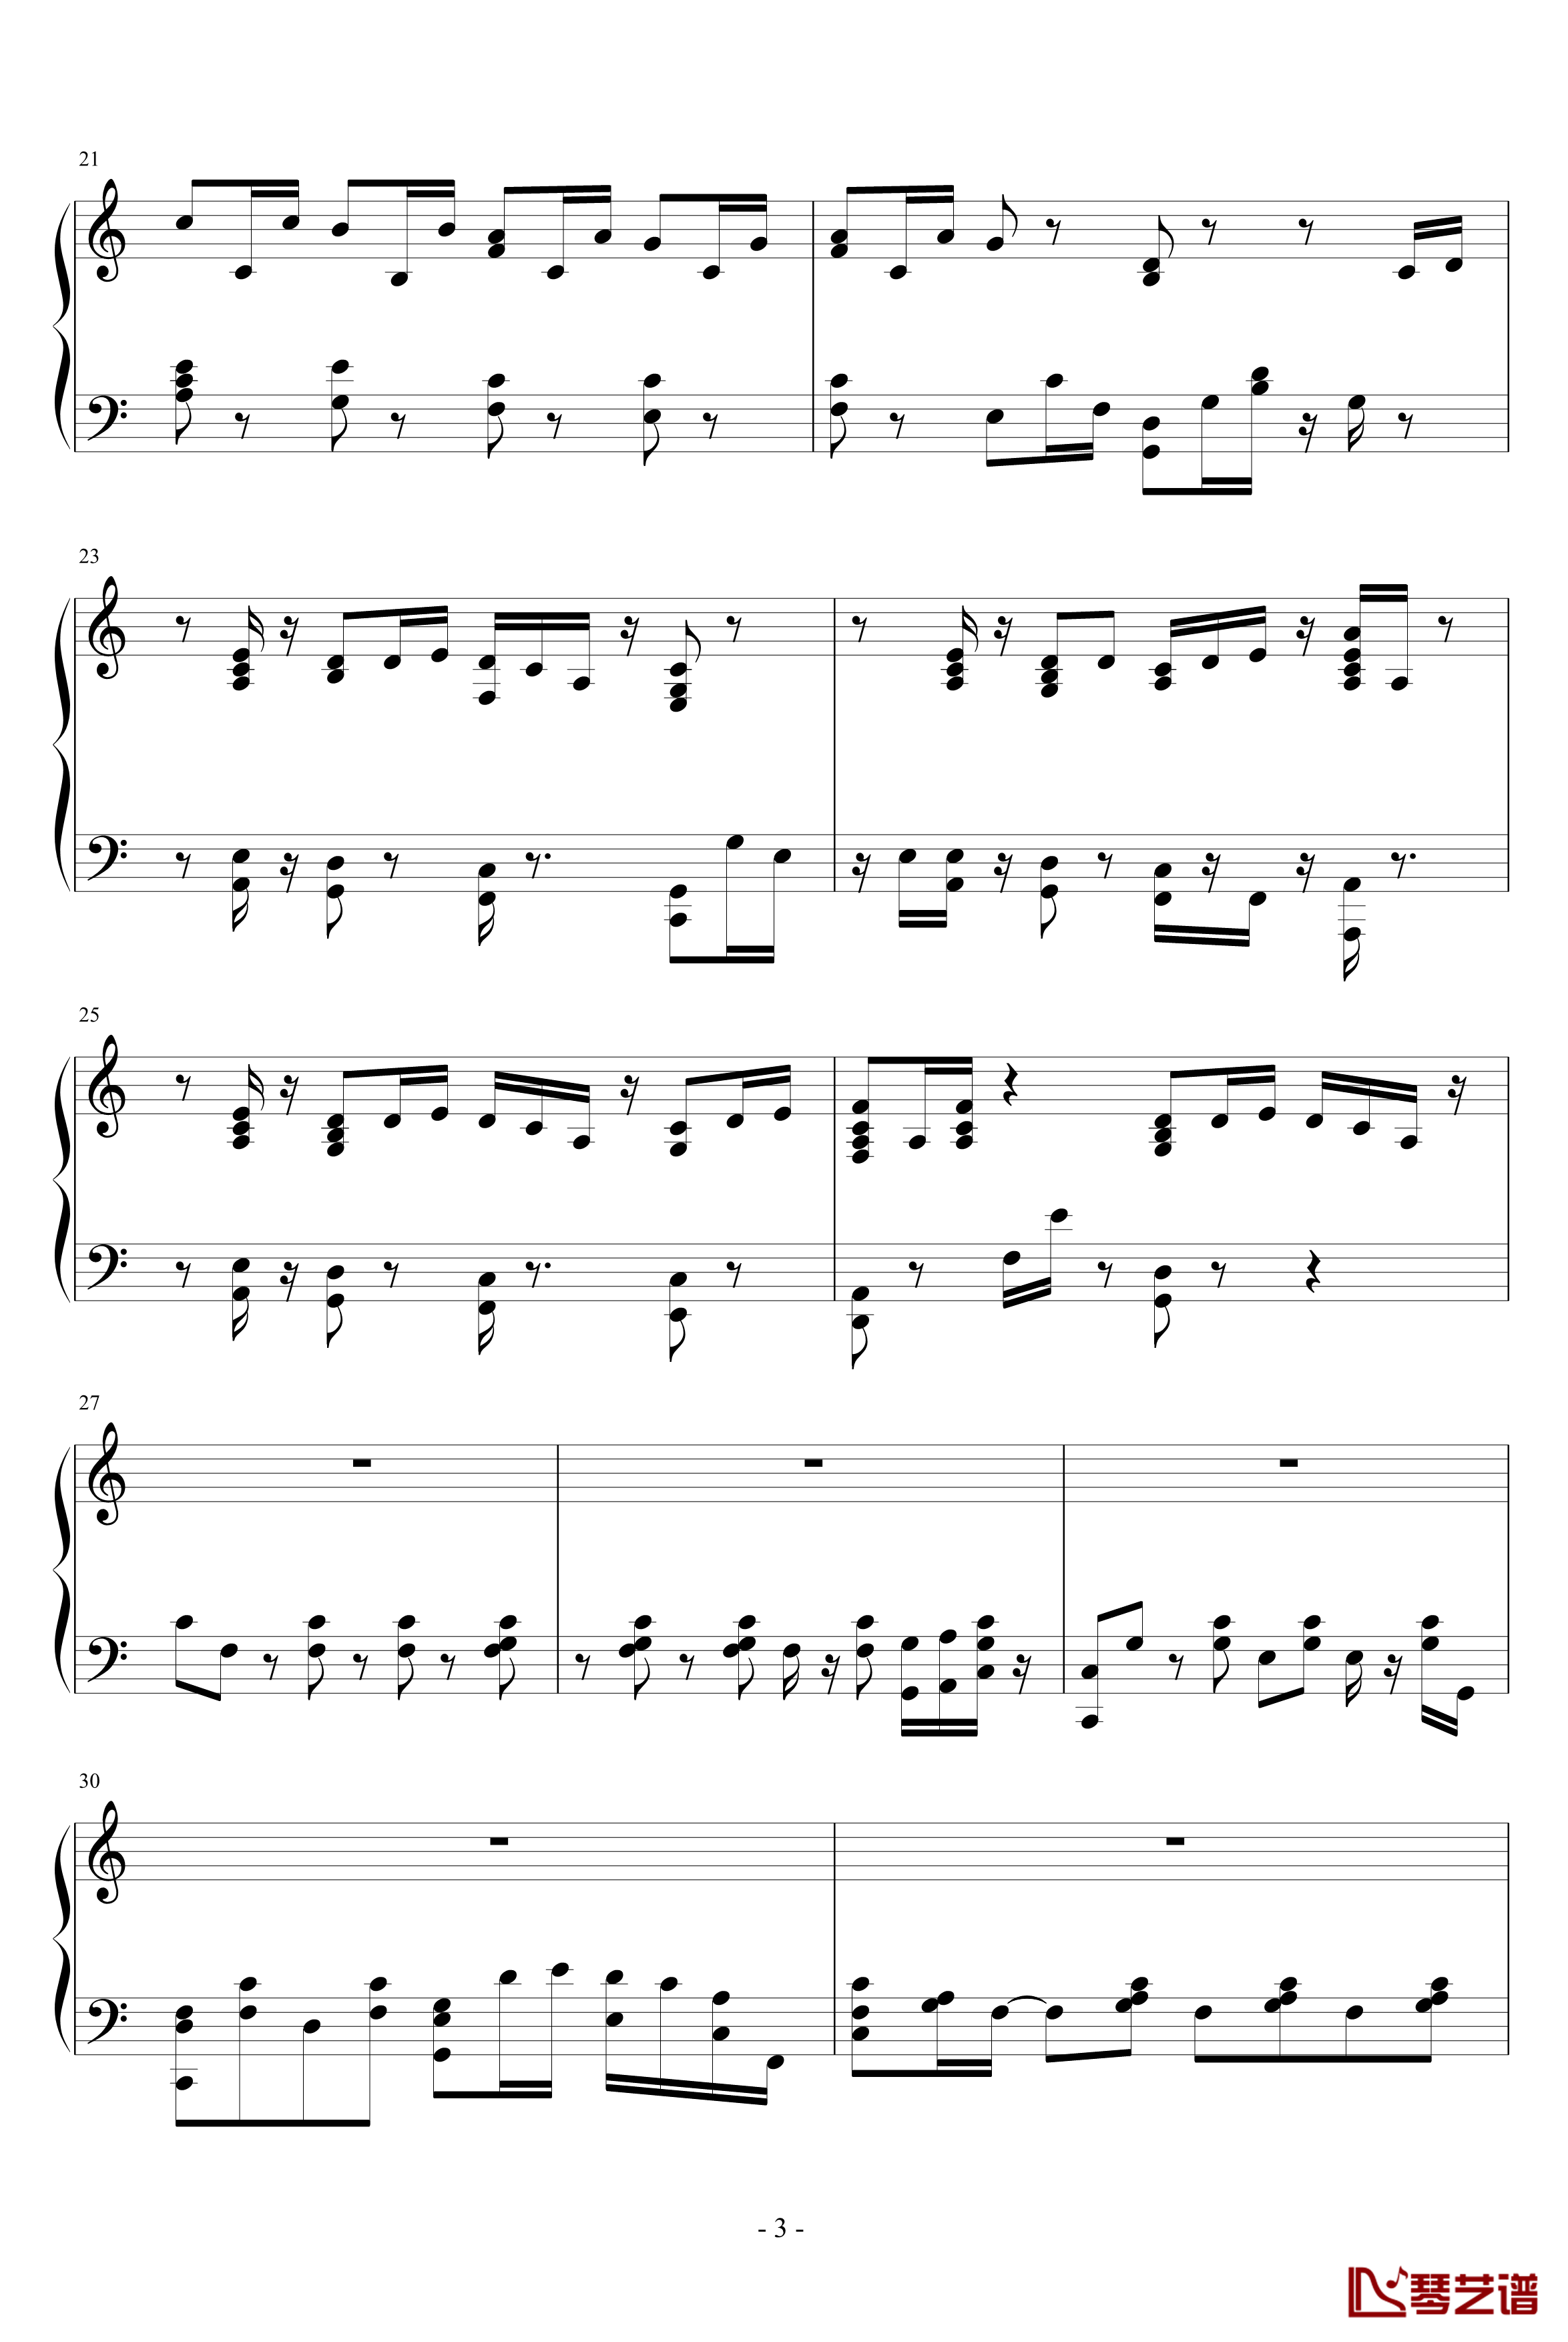 乡村抒情歌曲钢琴谱-未知分类3